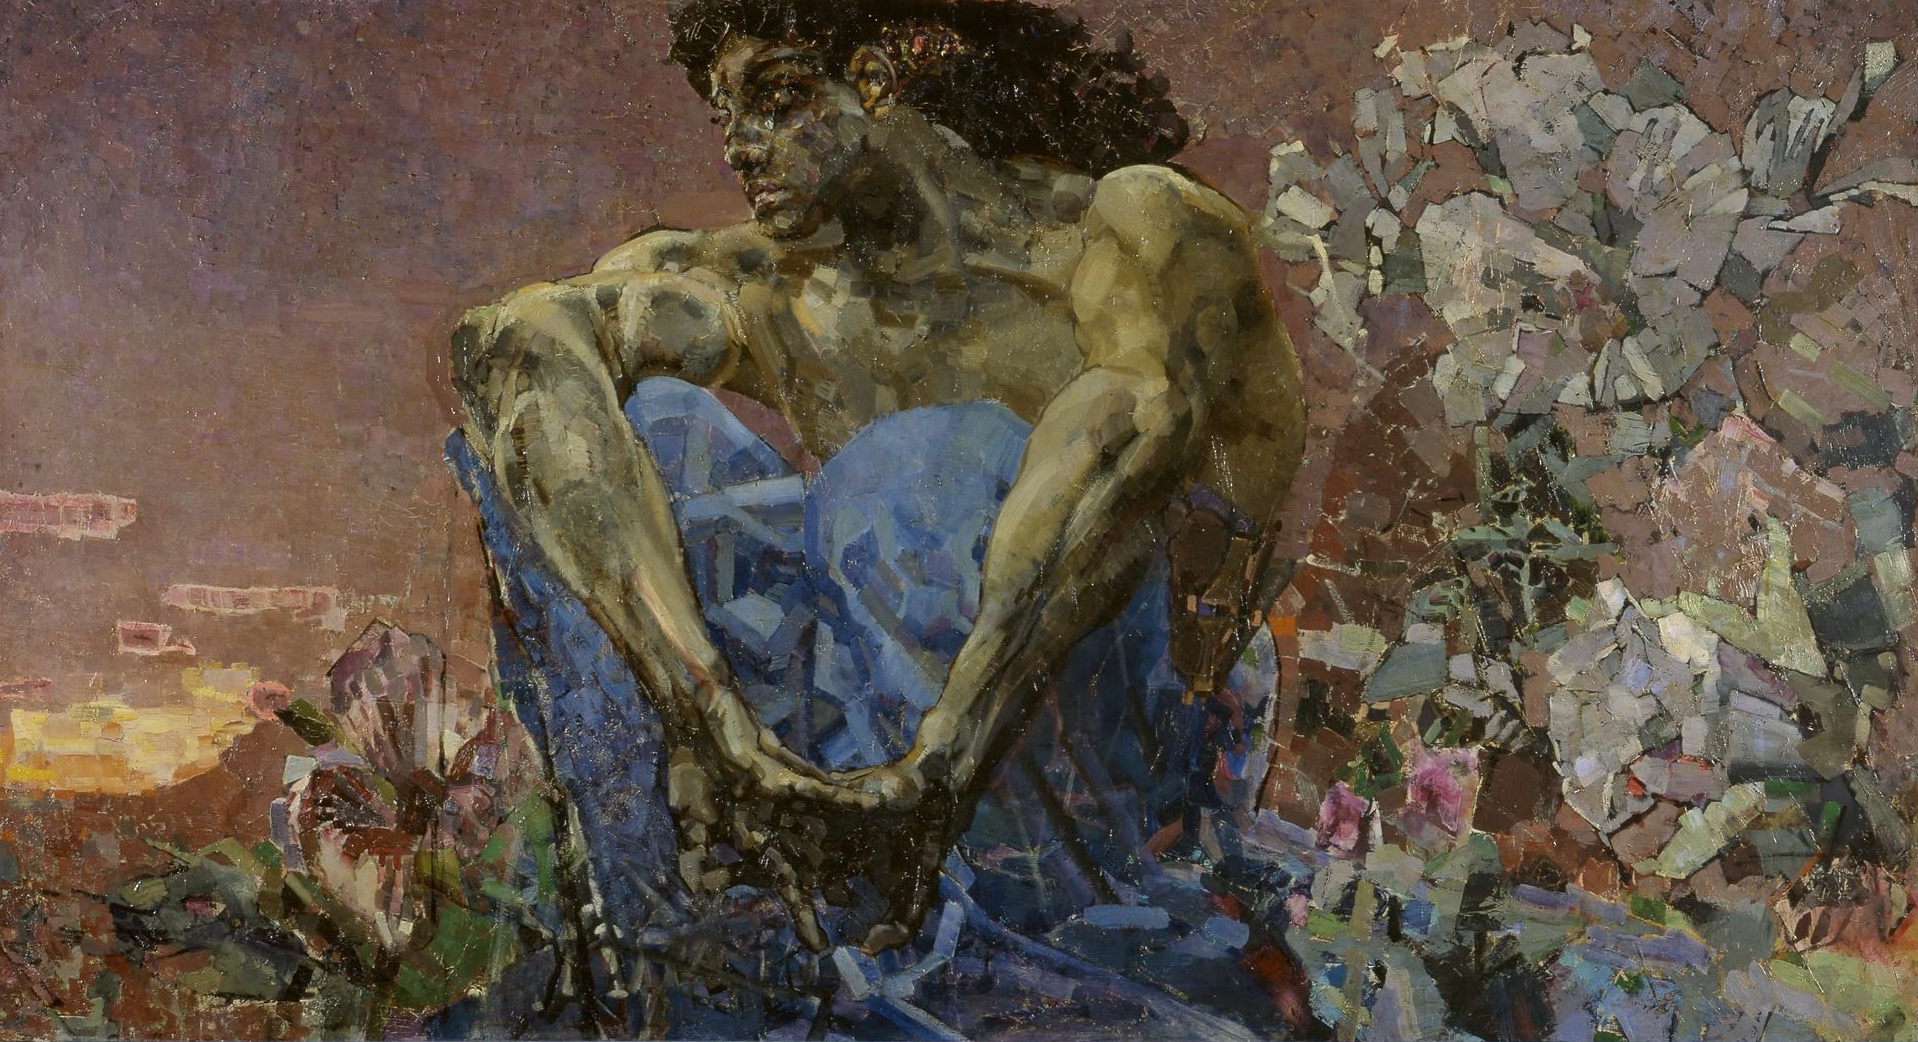 Démon assis  by Mikhaïl Vroubel - 1890 - 114 x 211 cm 